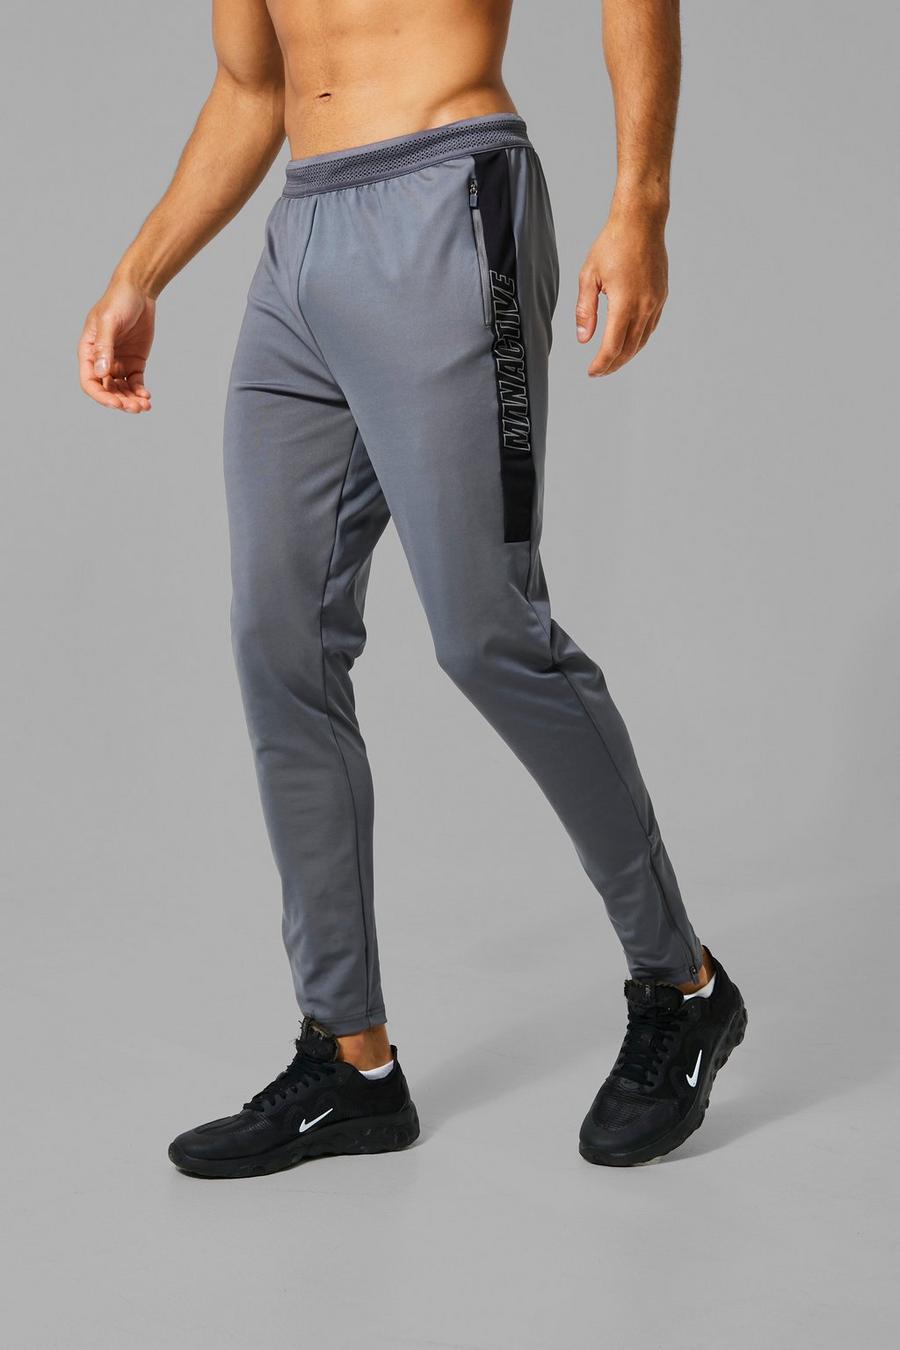 פחם gris מכנסי ריצה ספורטיביים עם הדפס וכיתוב Man